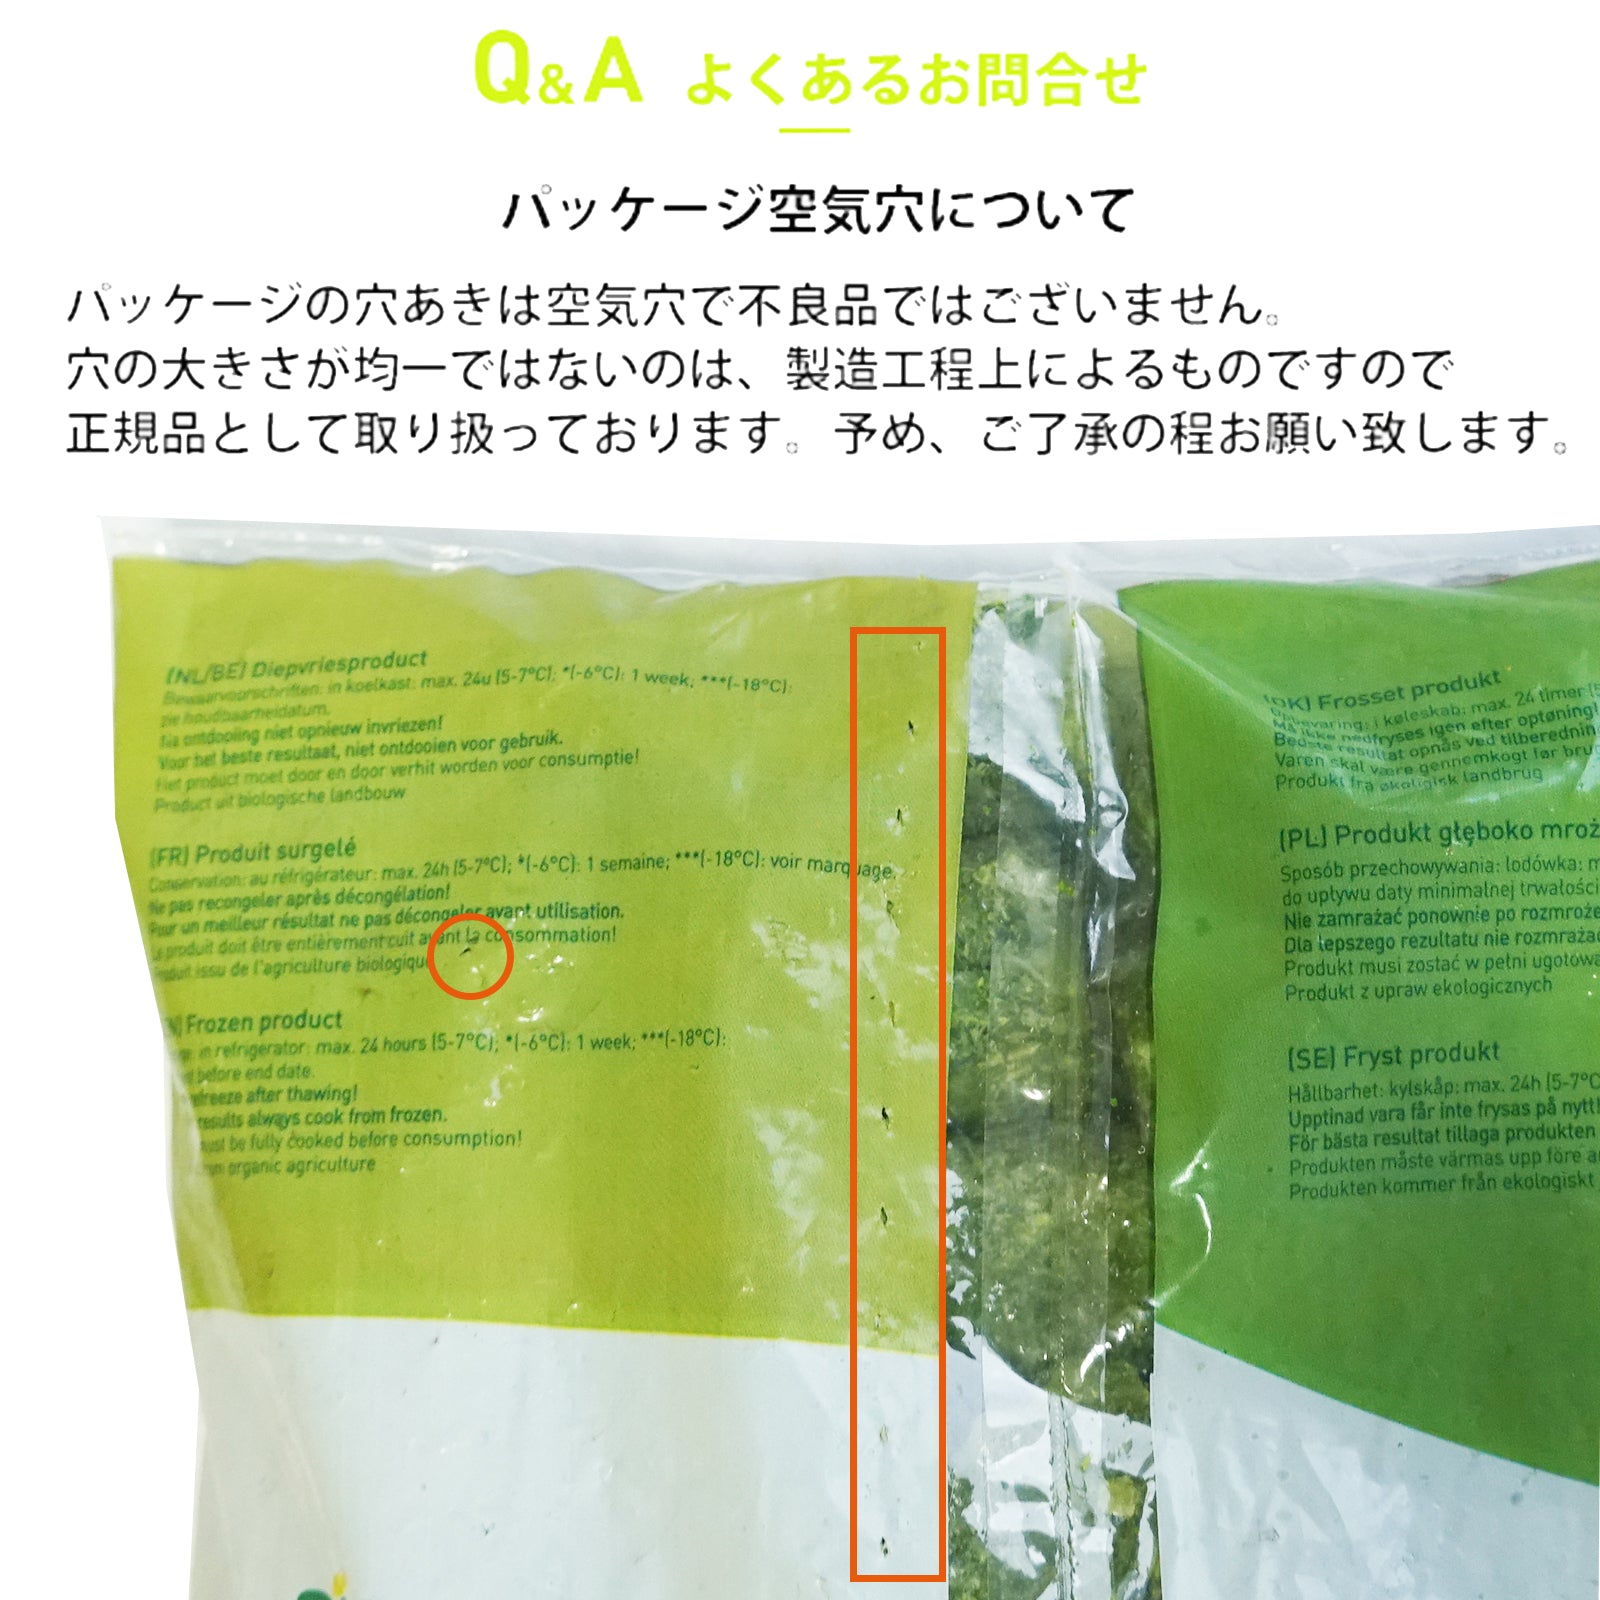 有機 JAS オーガニック 冷凍 スイートコーン スペイン産 化学物質不使用 (1kg-2.5kg) ホライズンファームズ